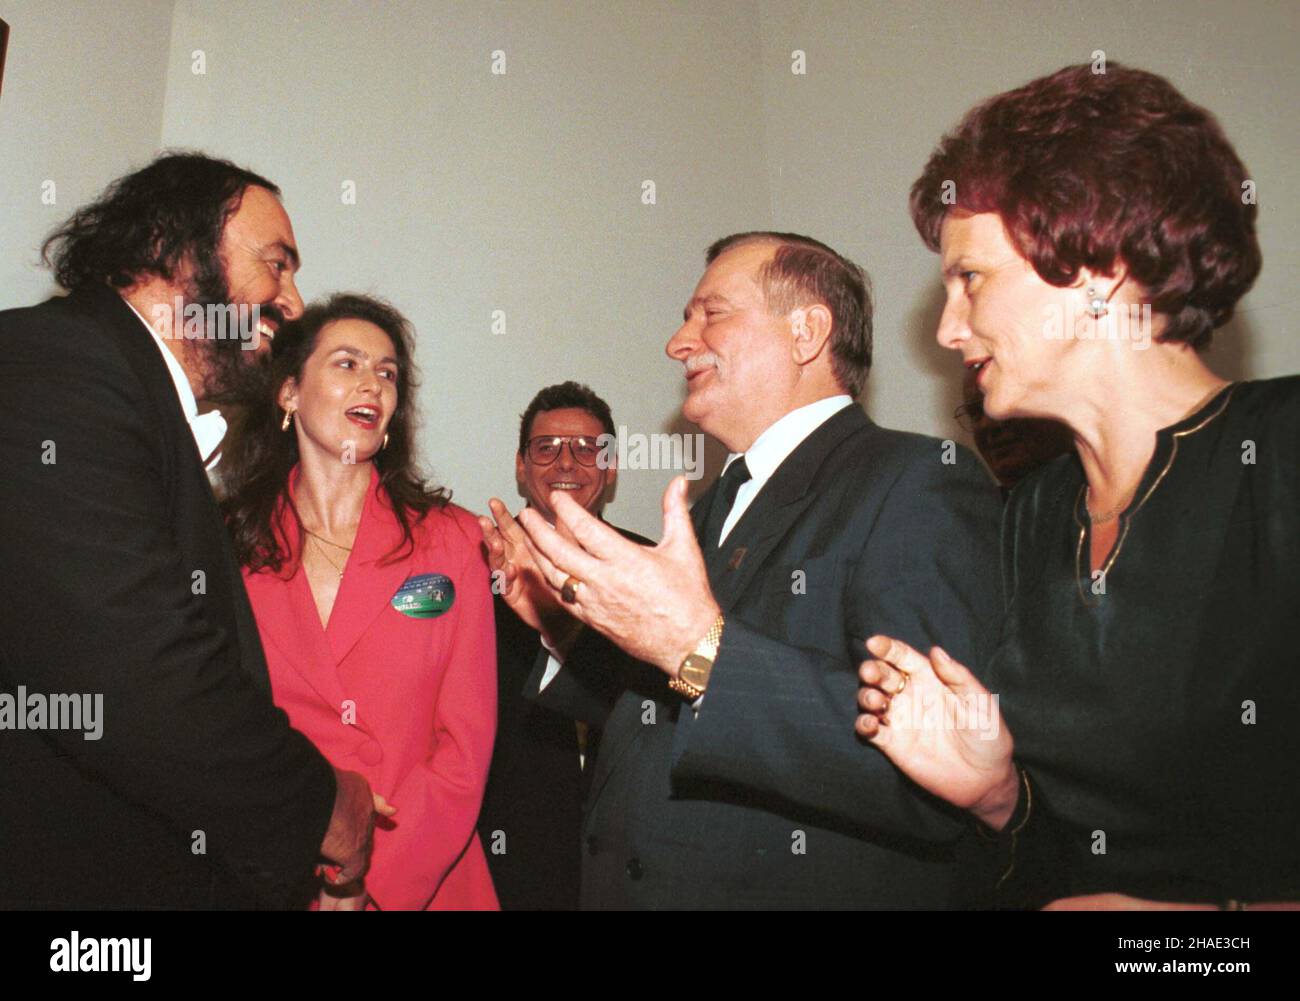 Warszawa, 04.10.1995. Koncert Luciano Pavarottiego w warszawskiej Sali Kongresowej. N/z tenor (L) wita siê z prezydentem Lechem Wa³ês¹ (2P) i jego ma³¿onk¹ Danut¹ (P). (kru) PAP/Maciej B. Brzozowski     Warsaw, 04.10.1995. Tenor Luciano Pavarotti with concert in Warsaw. Pictured: Pavarotti (L) met with Polish President Lech Walesa (2R) and his wife Danuta (R). (kru) PAP/Maciej B. Brzozowski Stock Photo